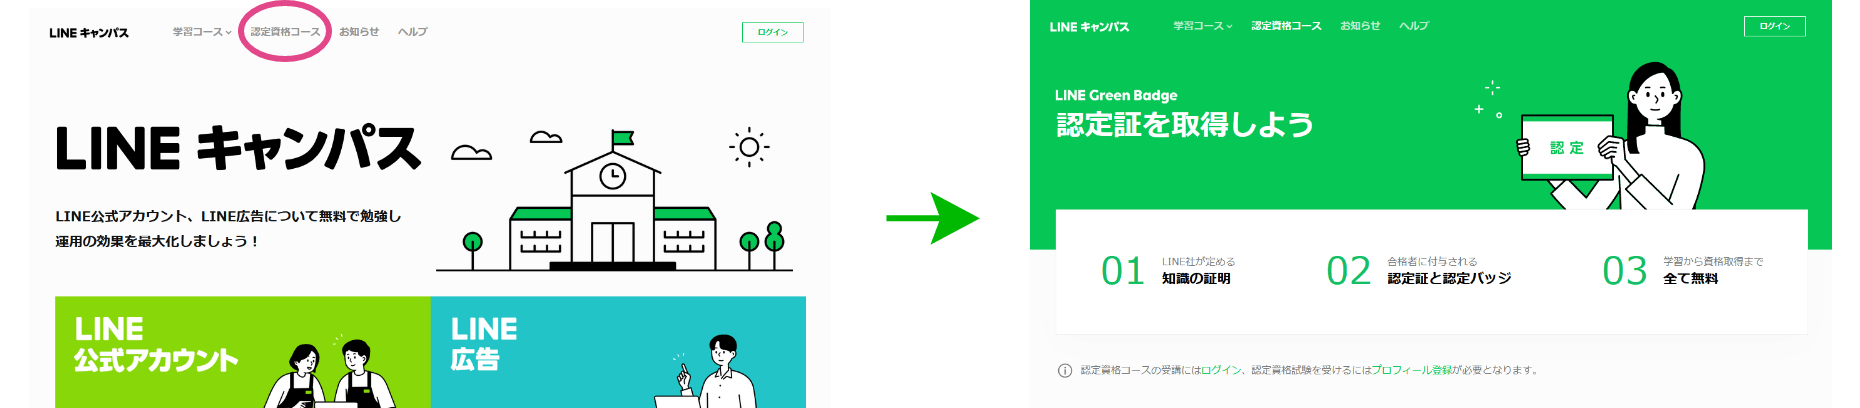 認定資格「LINE Green Badge」を1つ以上取得する。